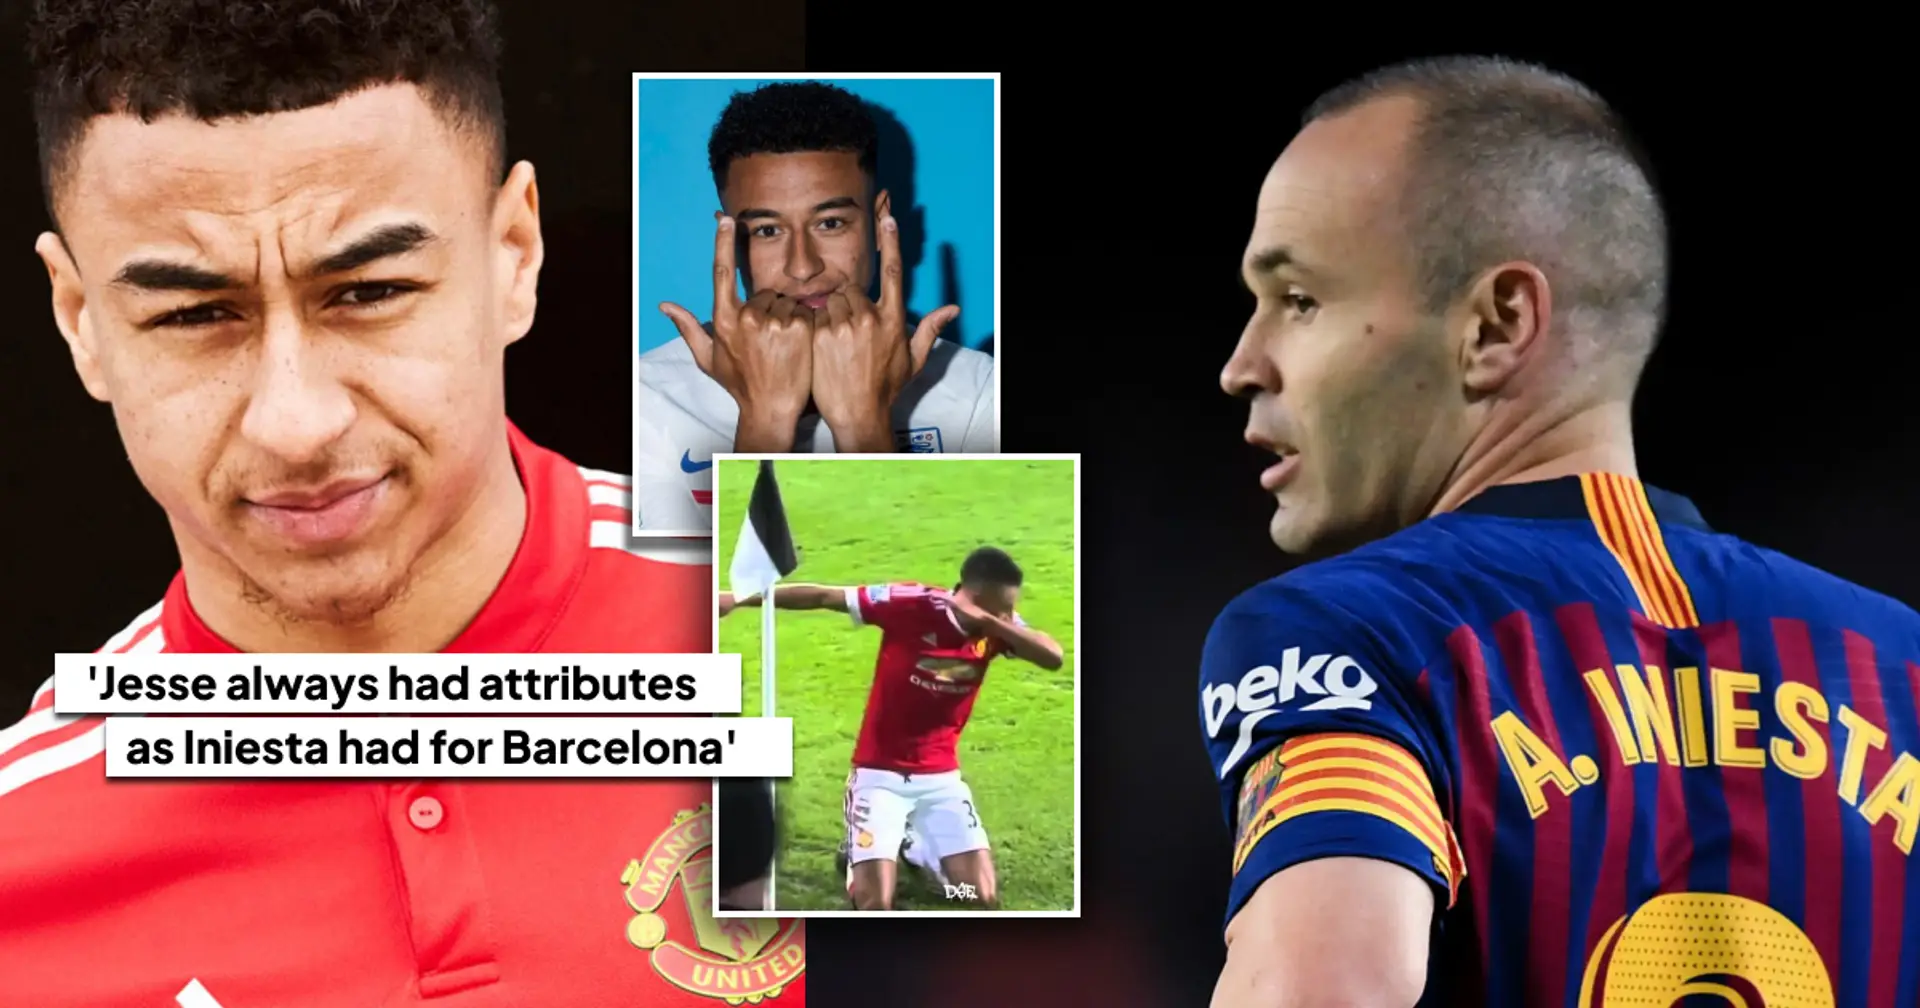 Jesse Lingard "s'offre" à Barcelone - il a été comparé à Iniesta